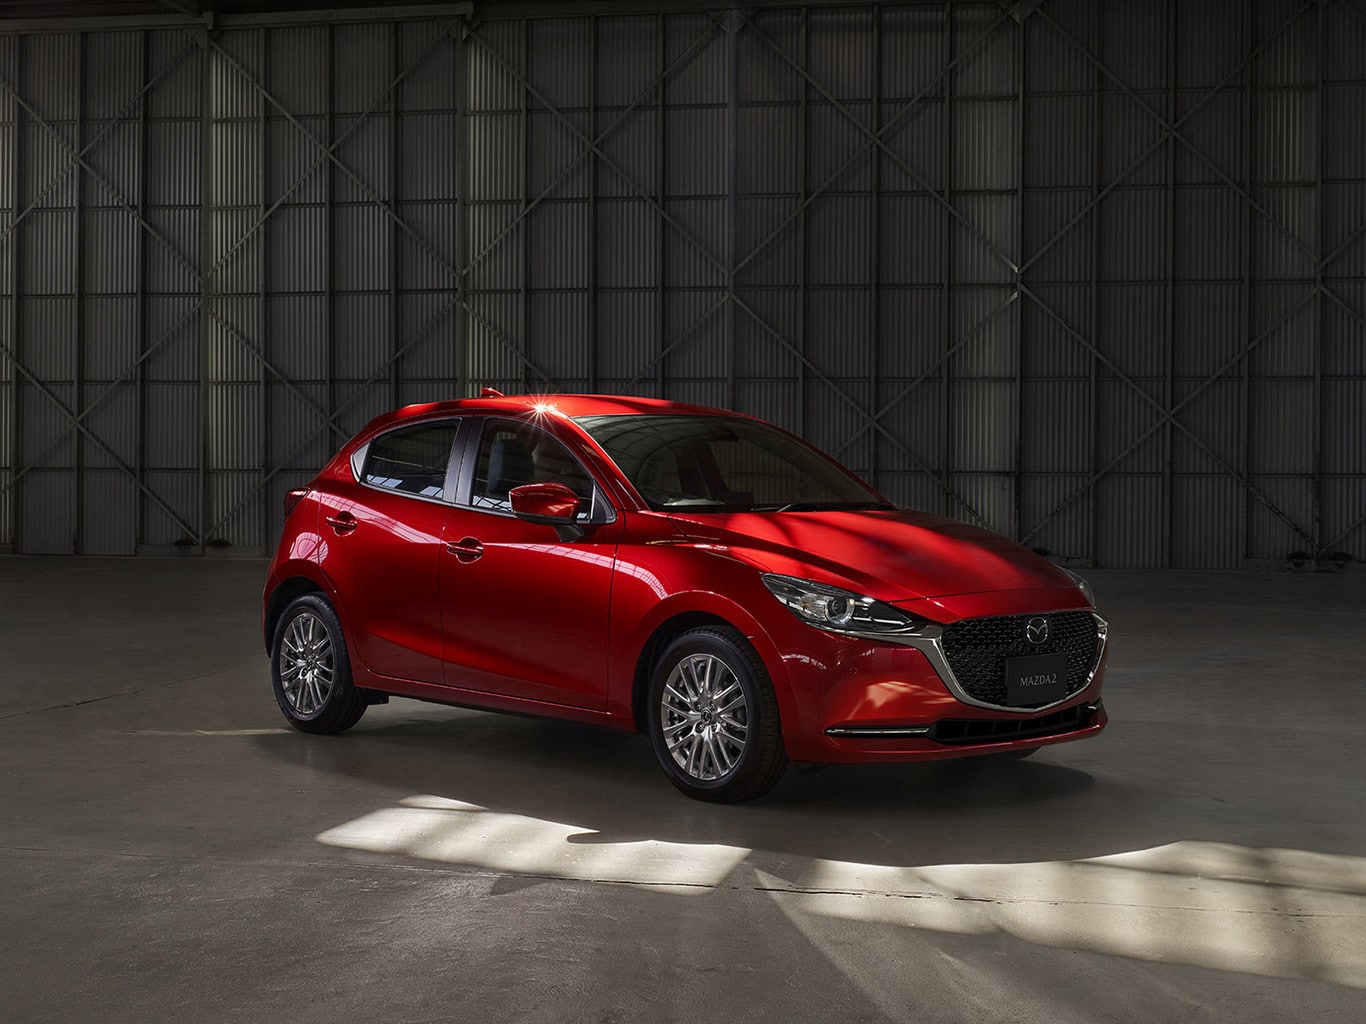 Mazda2 modelo 2020 llegará en noviembre a los concesionarios